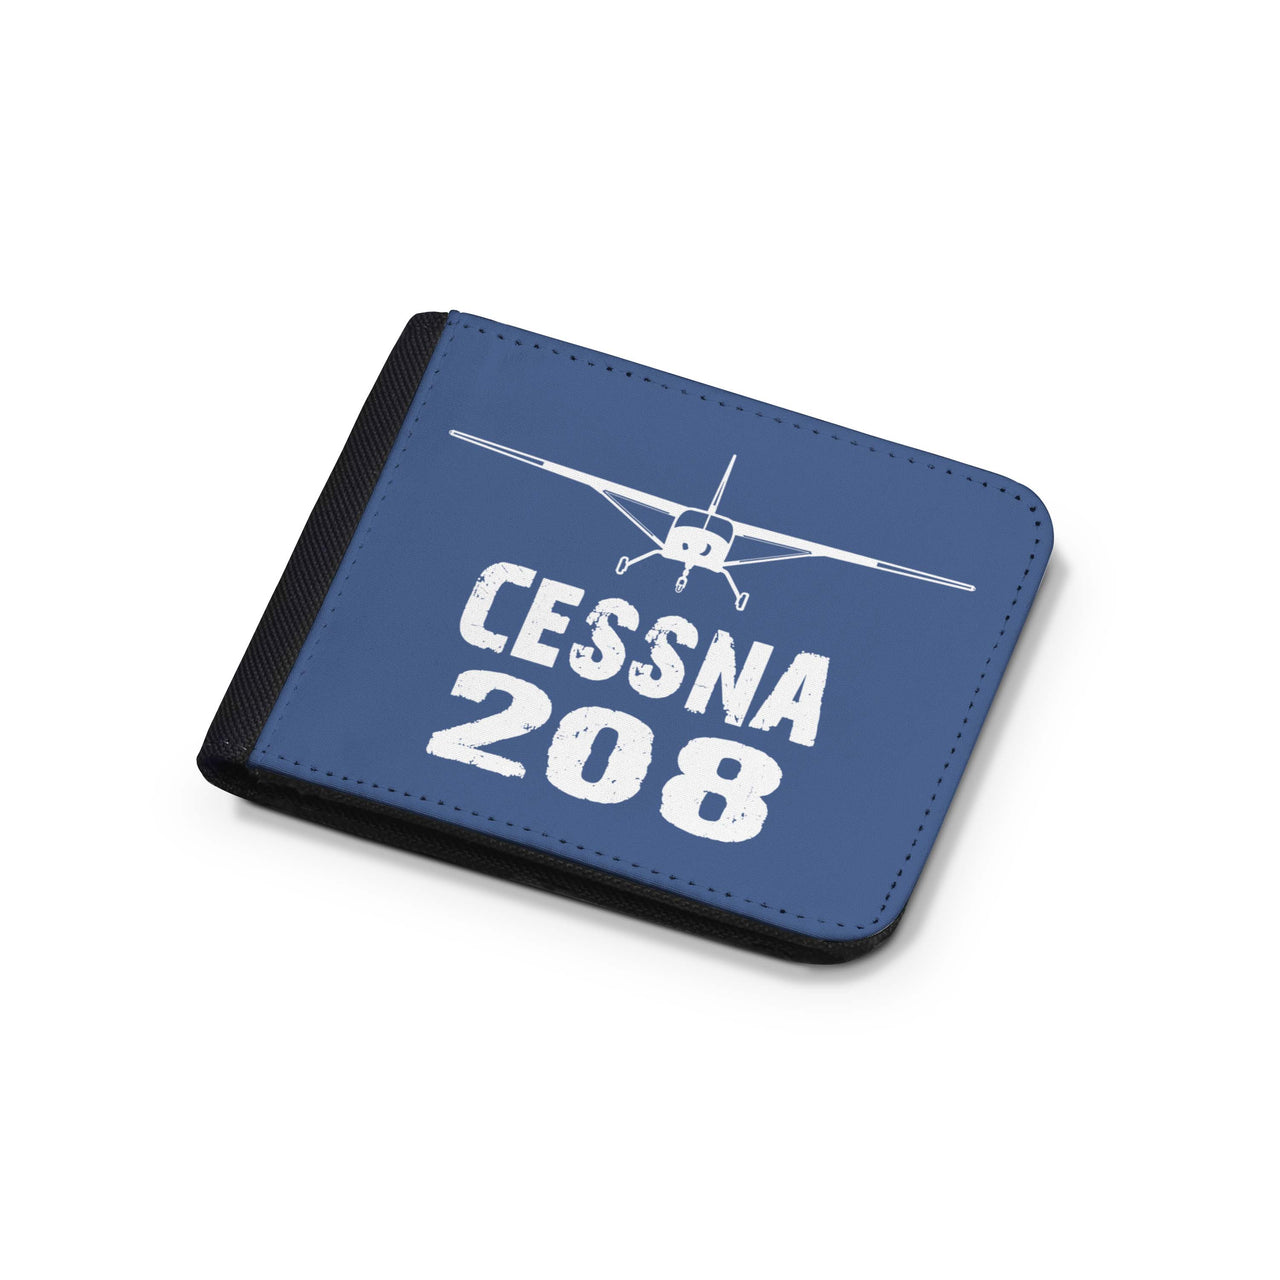 Cessna 208 & Plane Designed Wallets